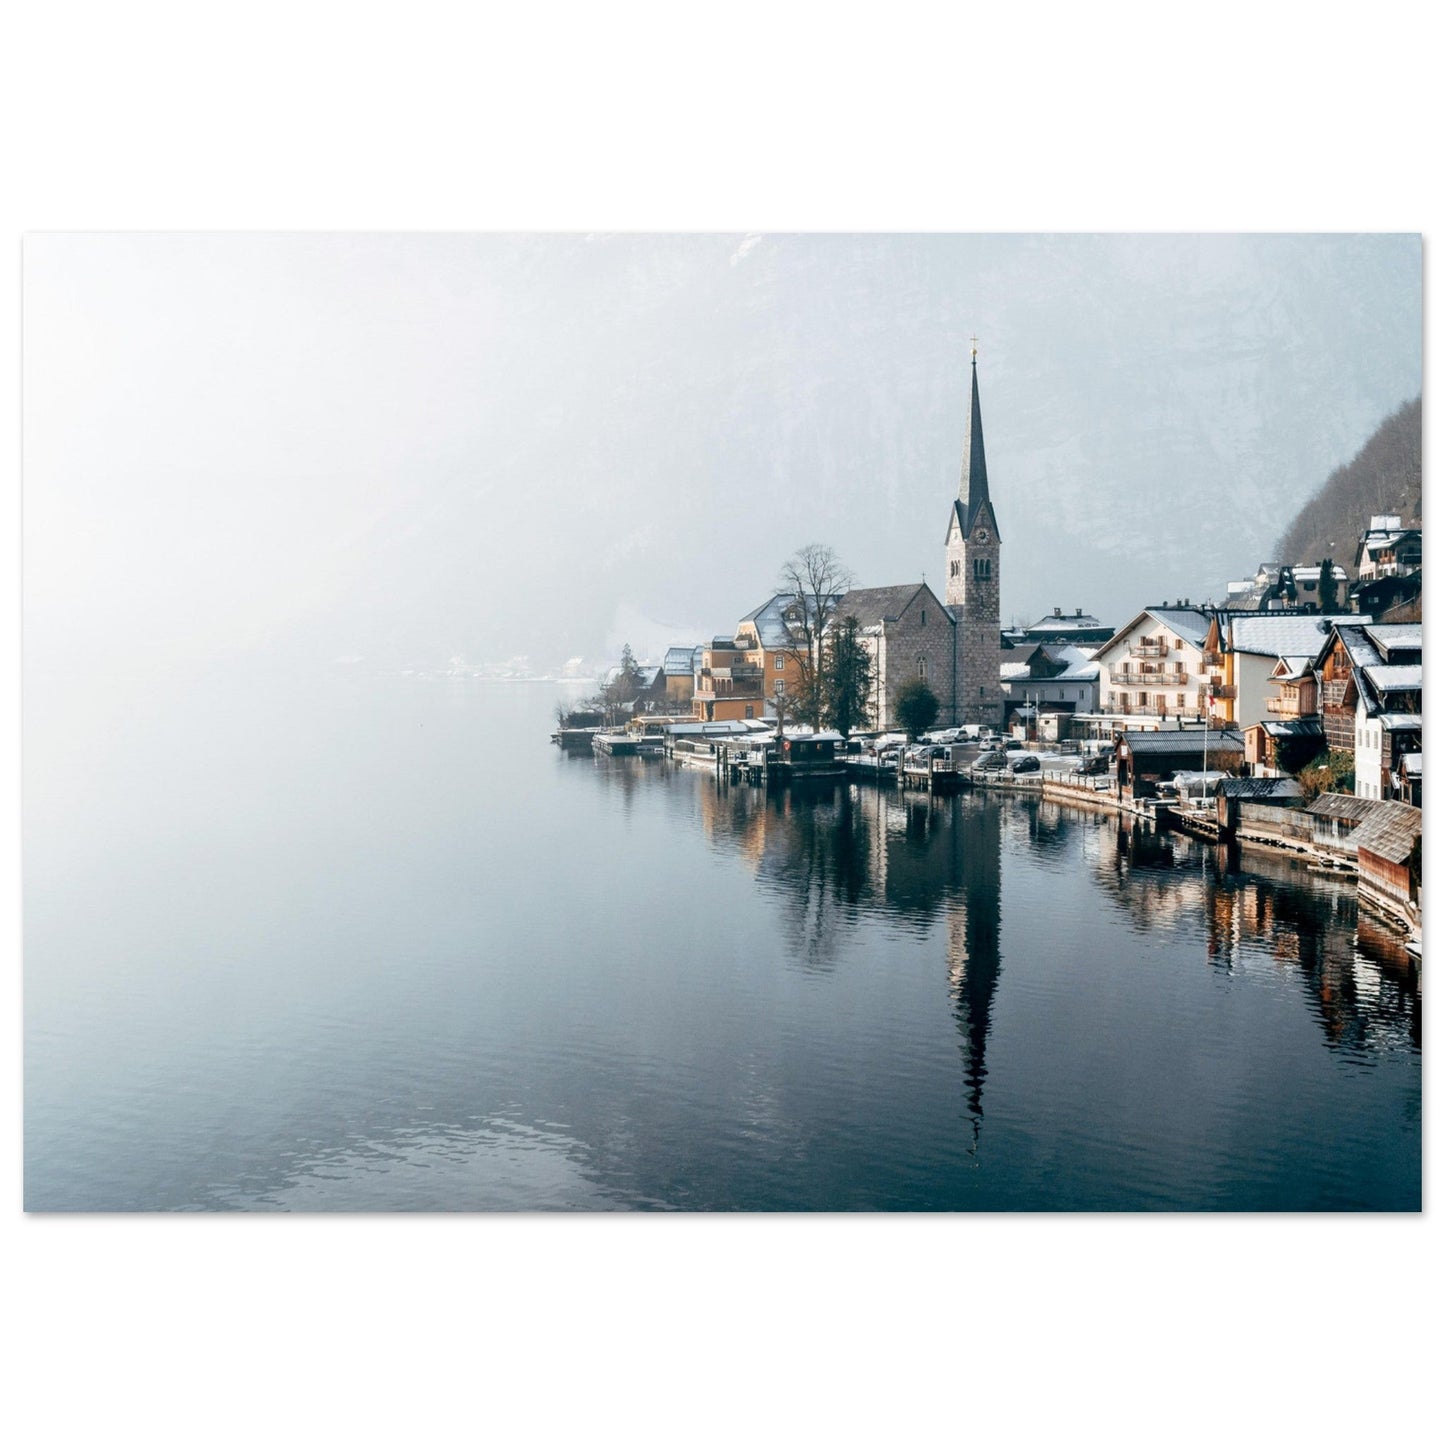 Vente Photo de Hallstatt, Autriche #2 - Tableau photo paysage